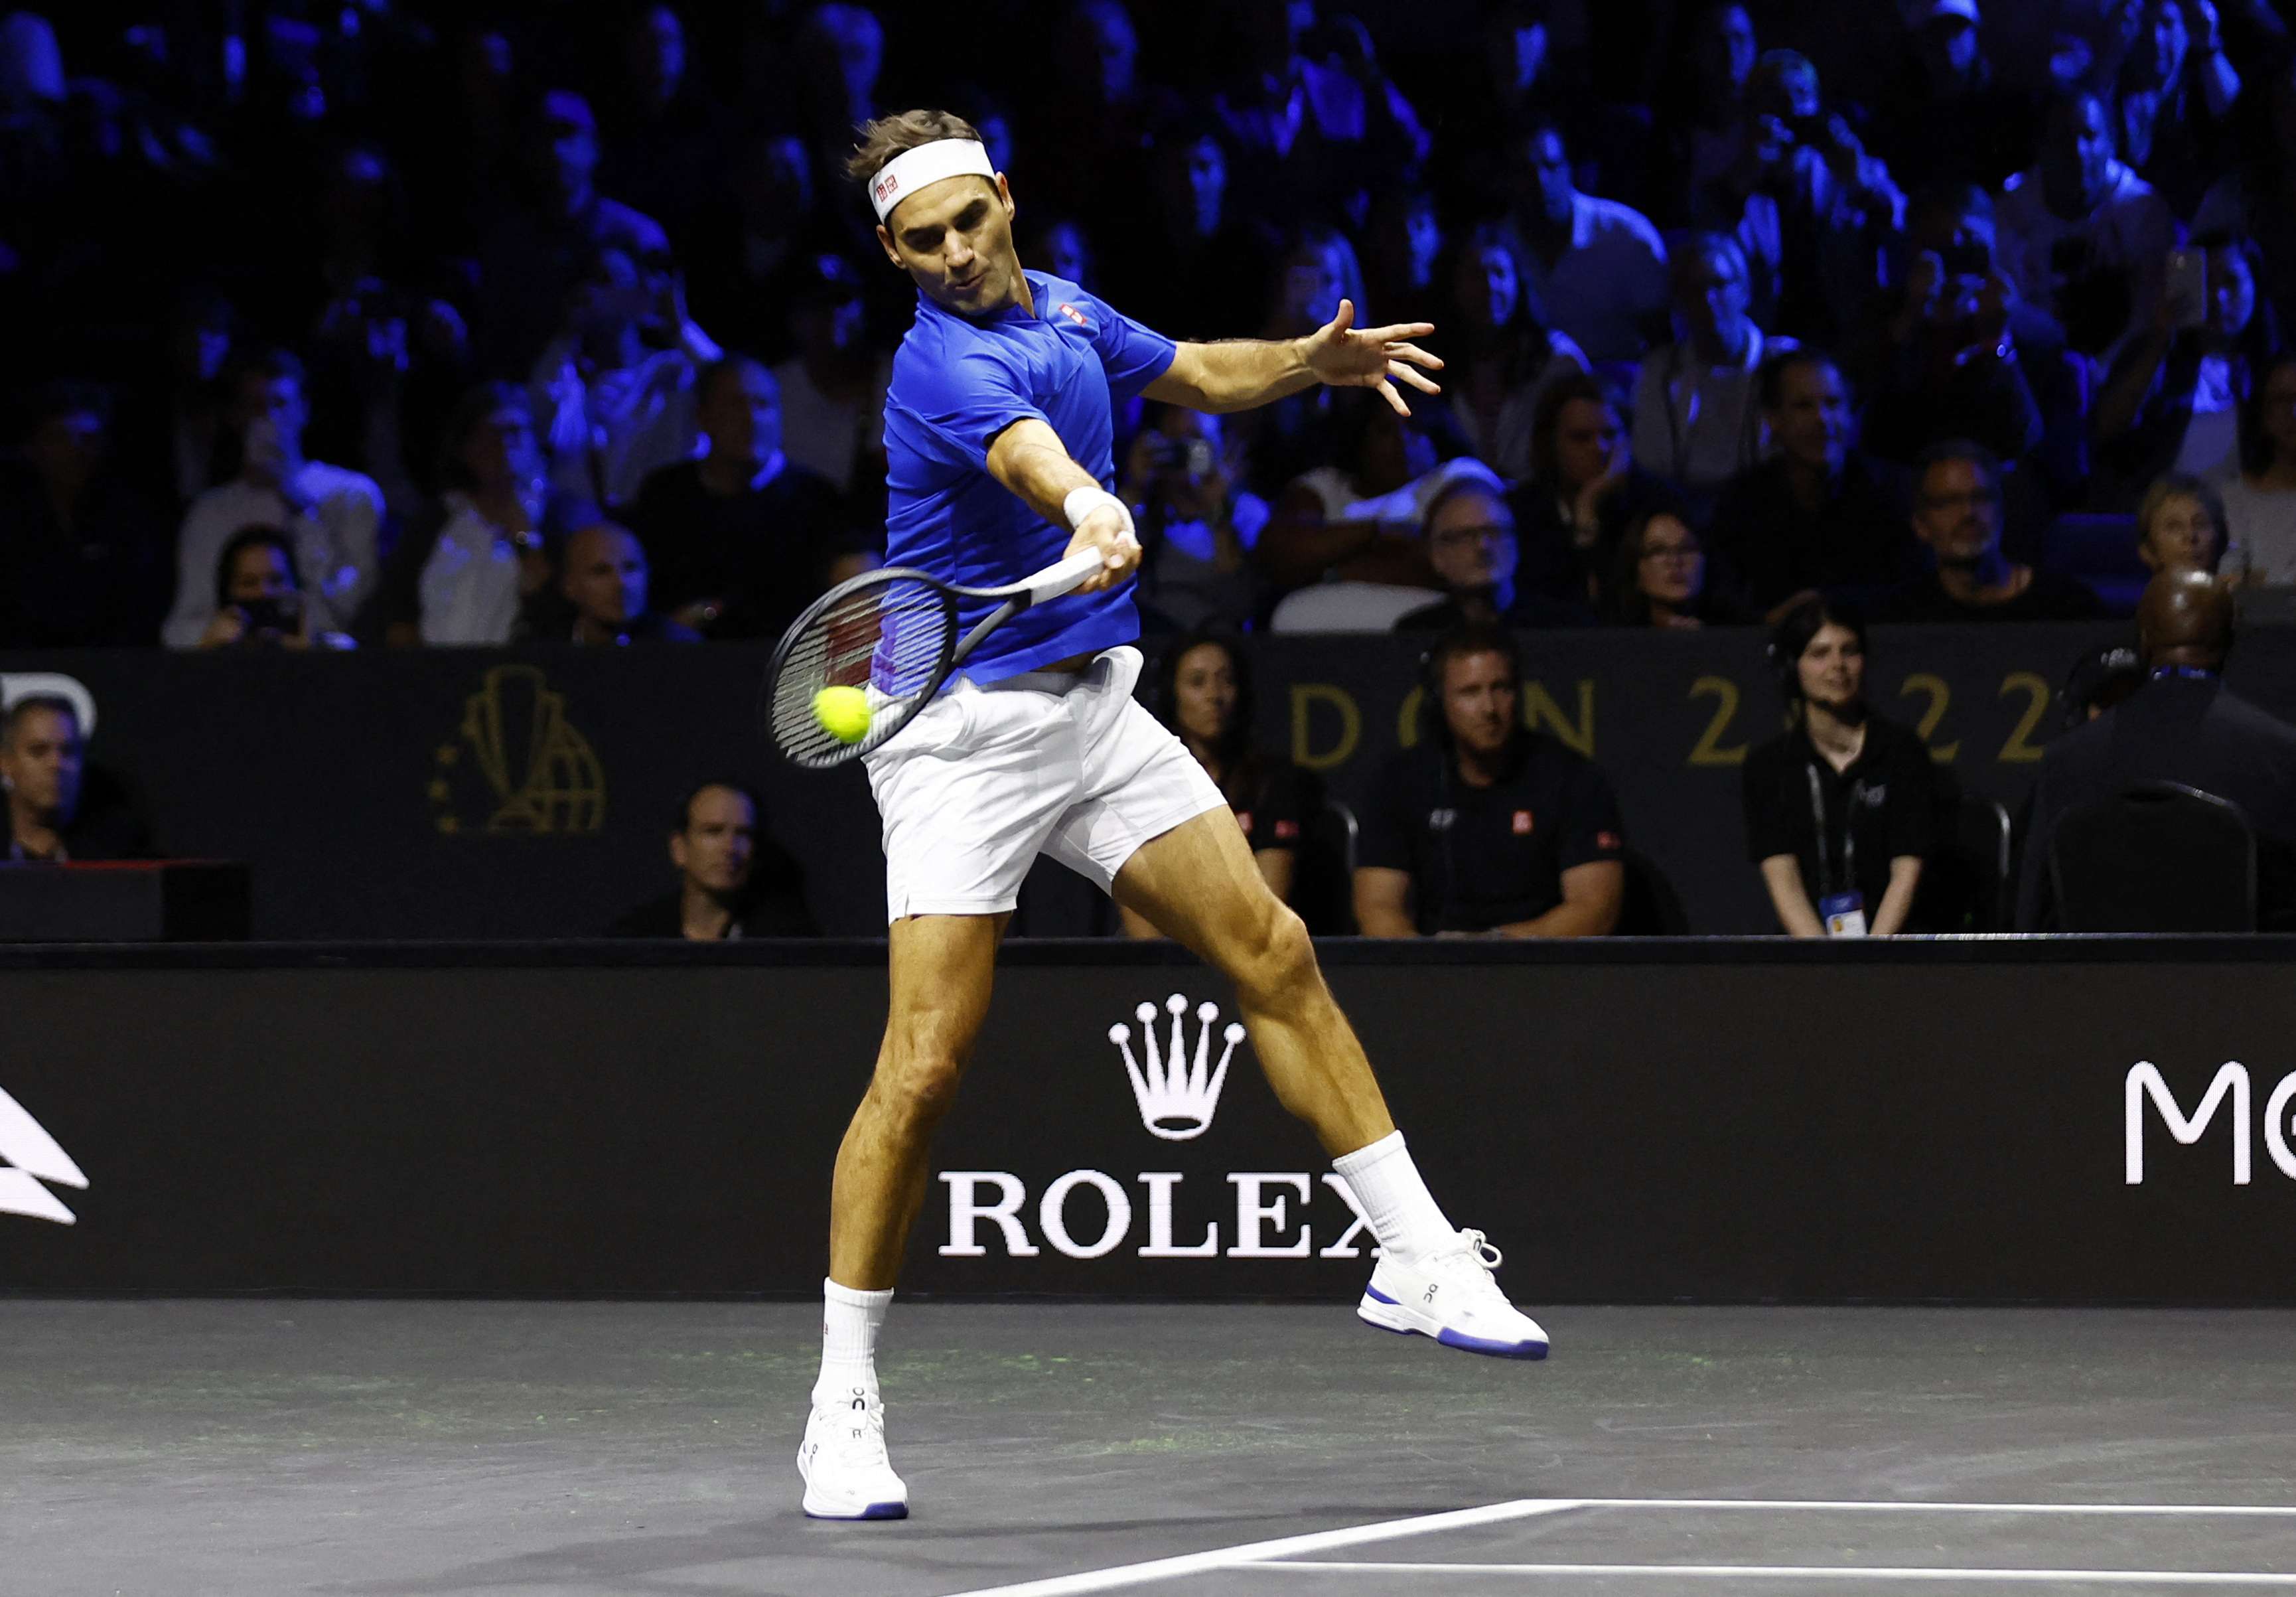  Rafael Nadal del equipo europeo en acción durante su partido de dobles con Roger Federer. (Foto: REUTERS/Andrew Boyers)